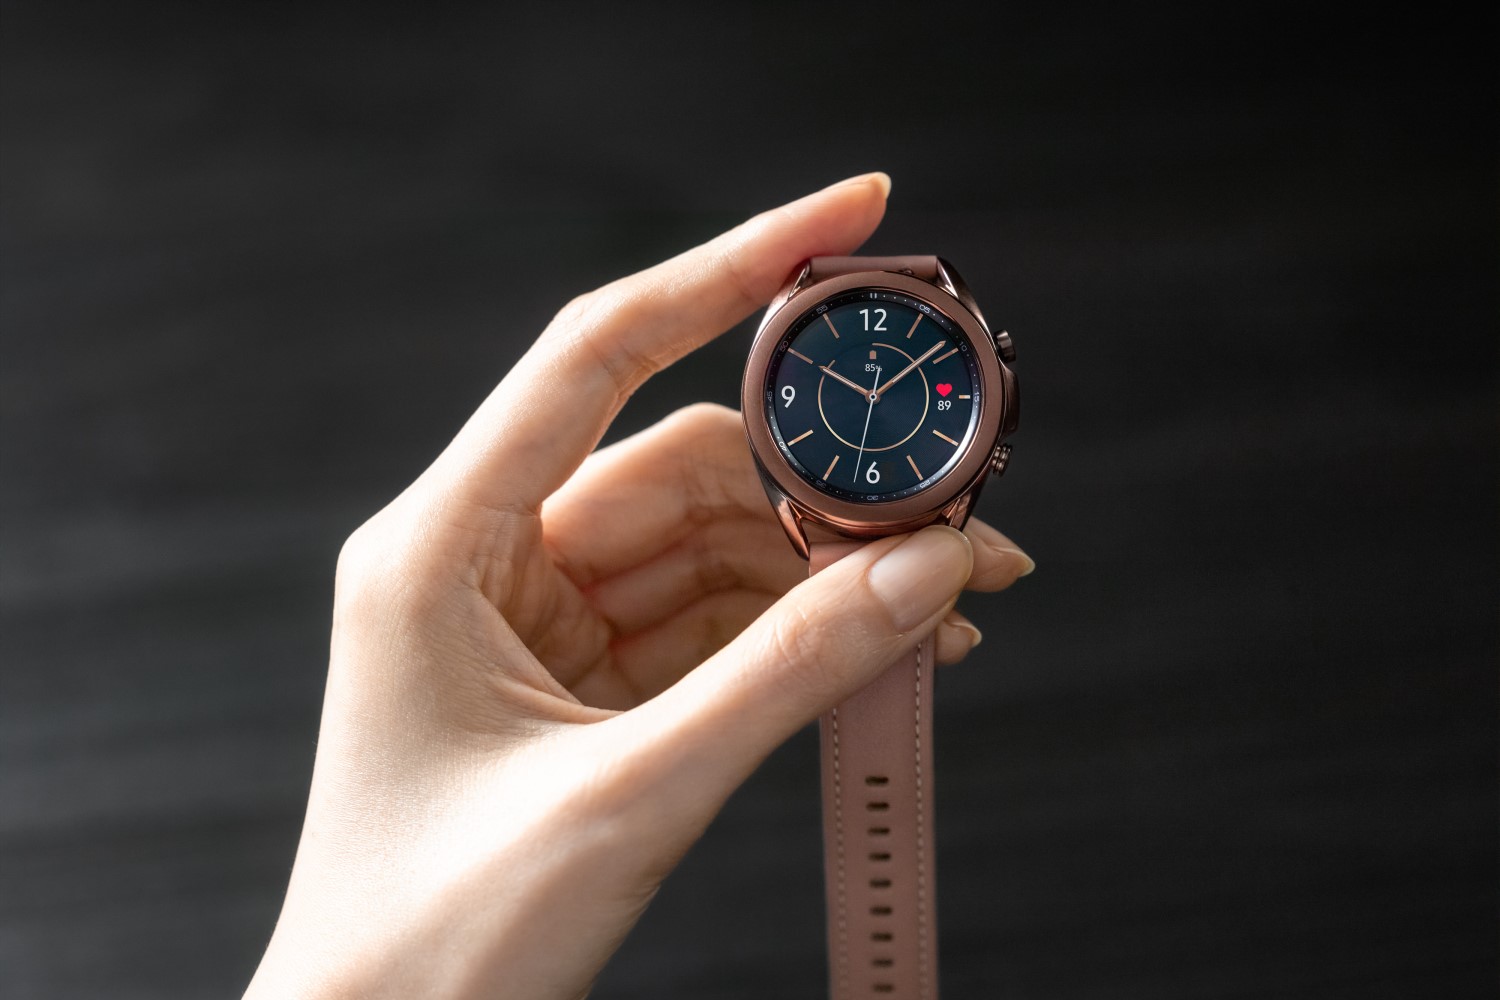 Samsung Galaxy Watch3 trae lujo, confort y más funciones